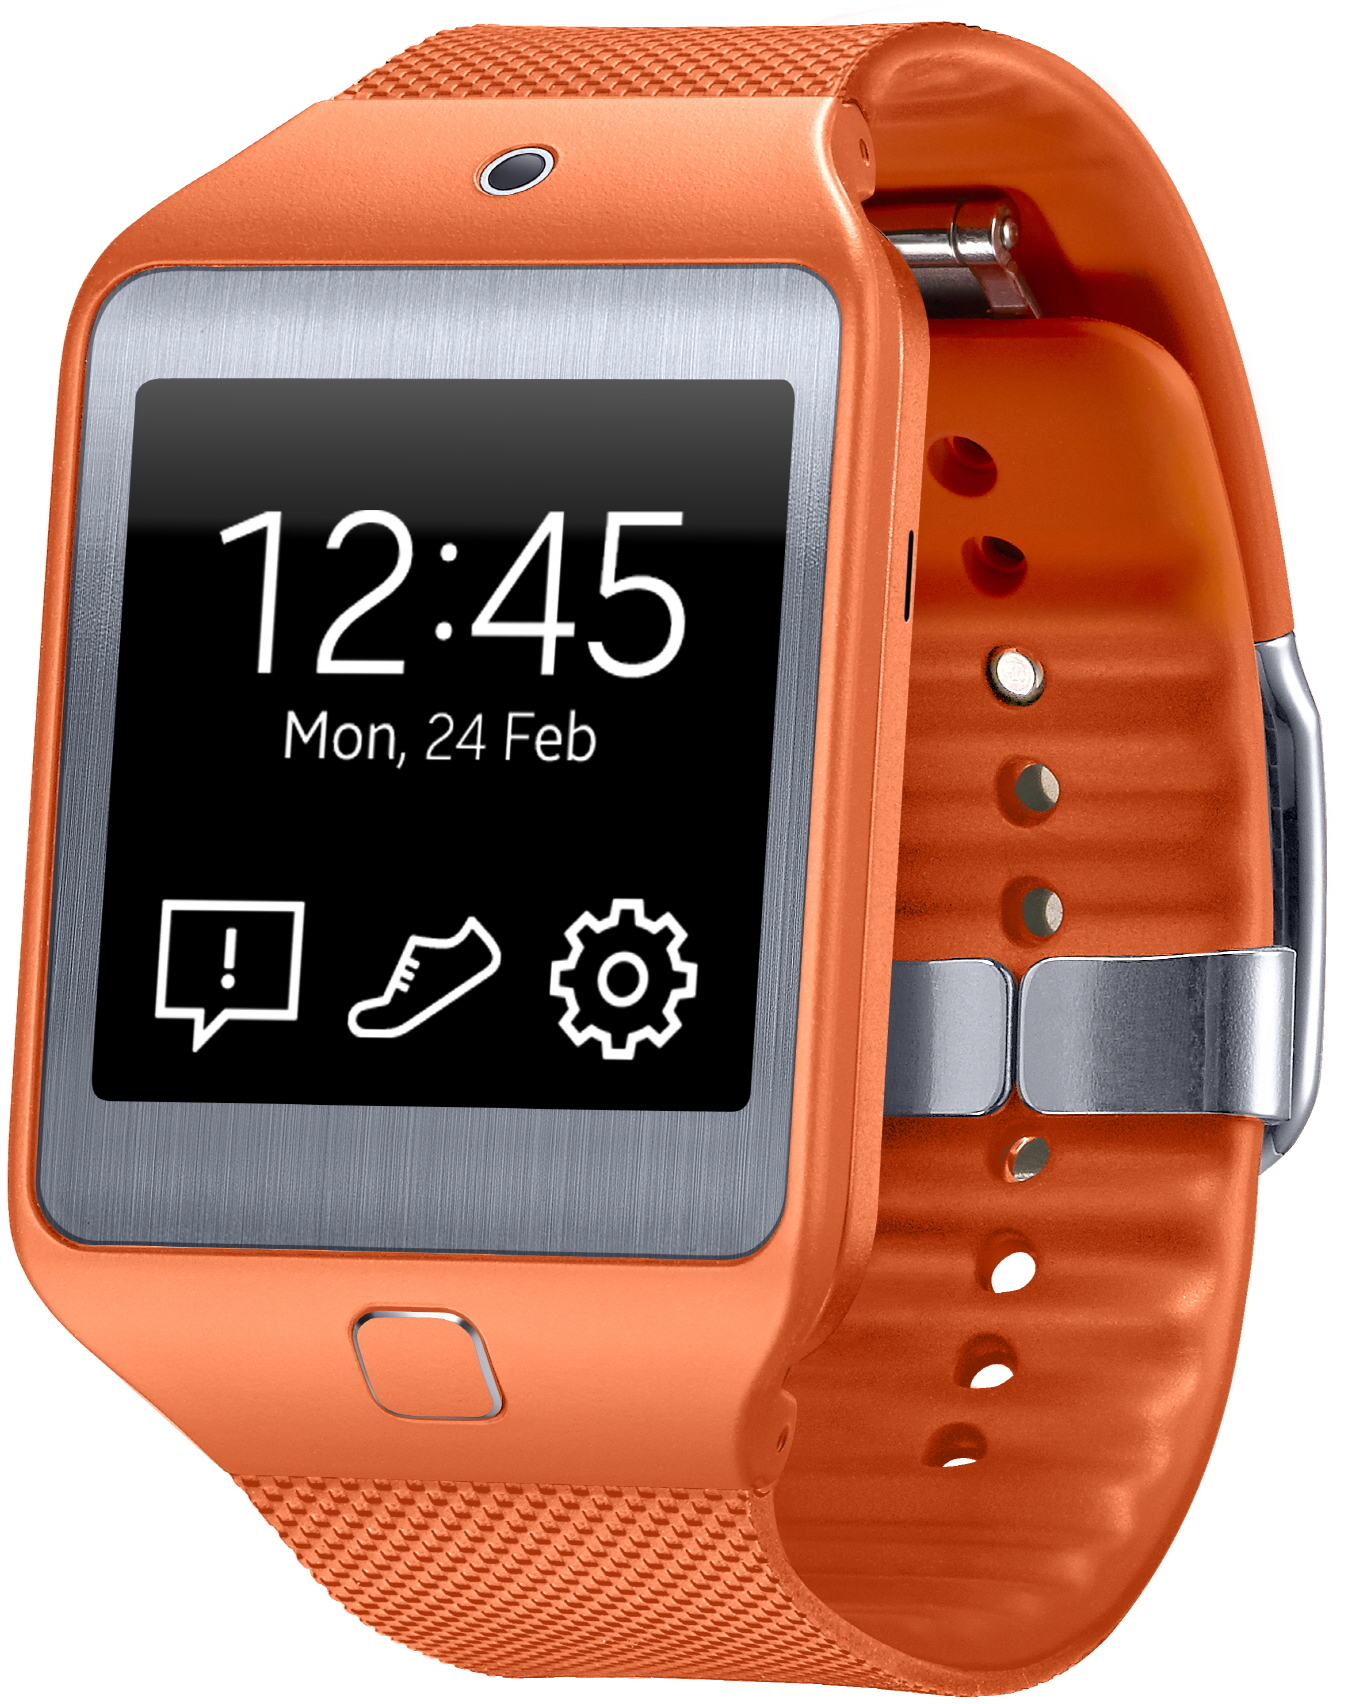 Samsung Gear 2 Neo : caractéristiques, prix et test de la smartwatch